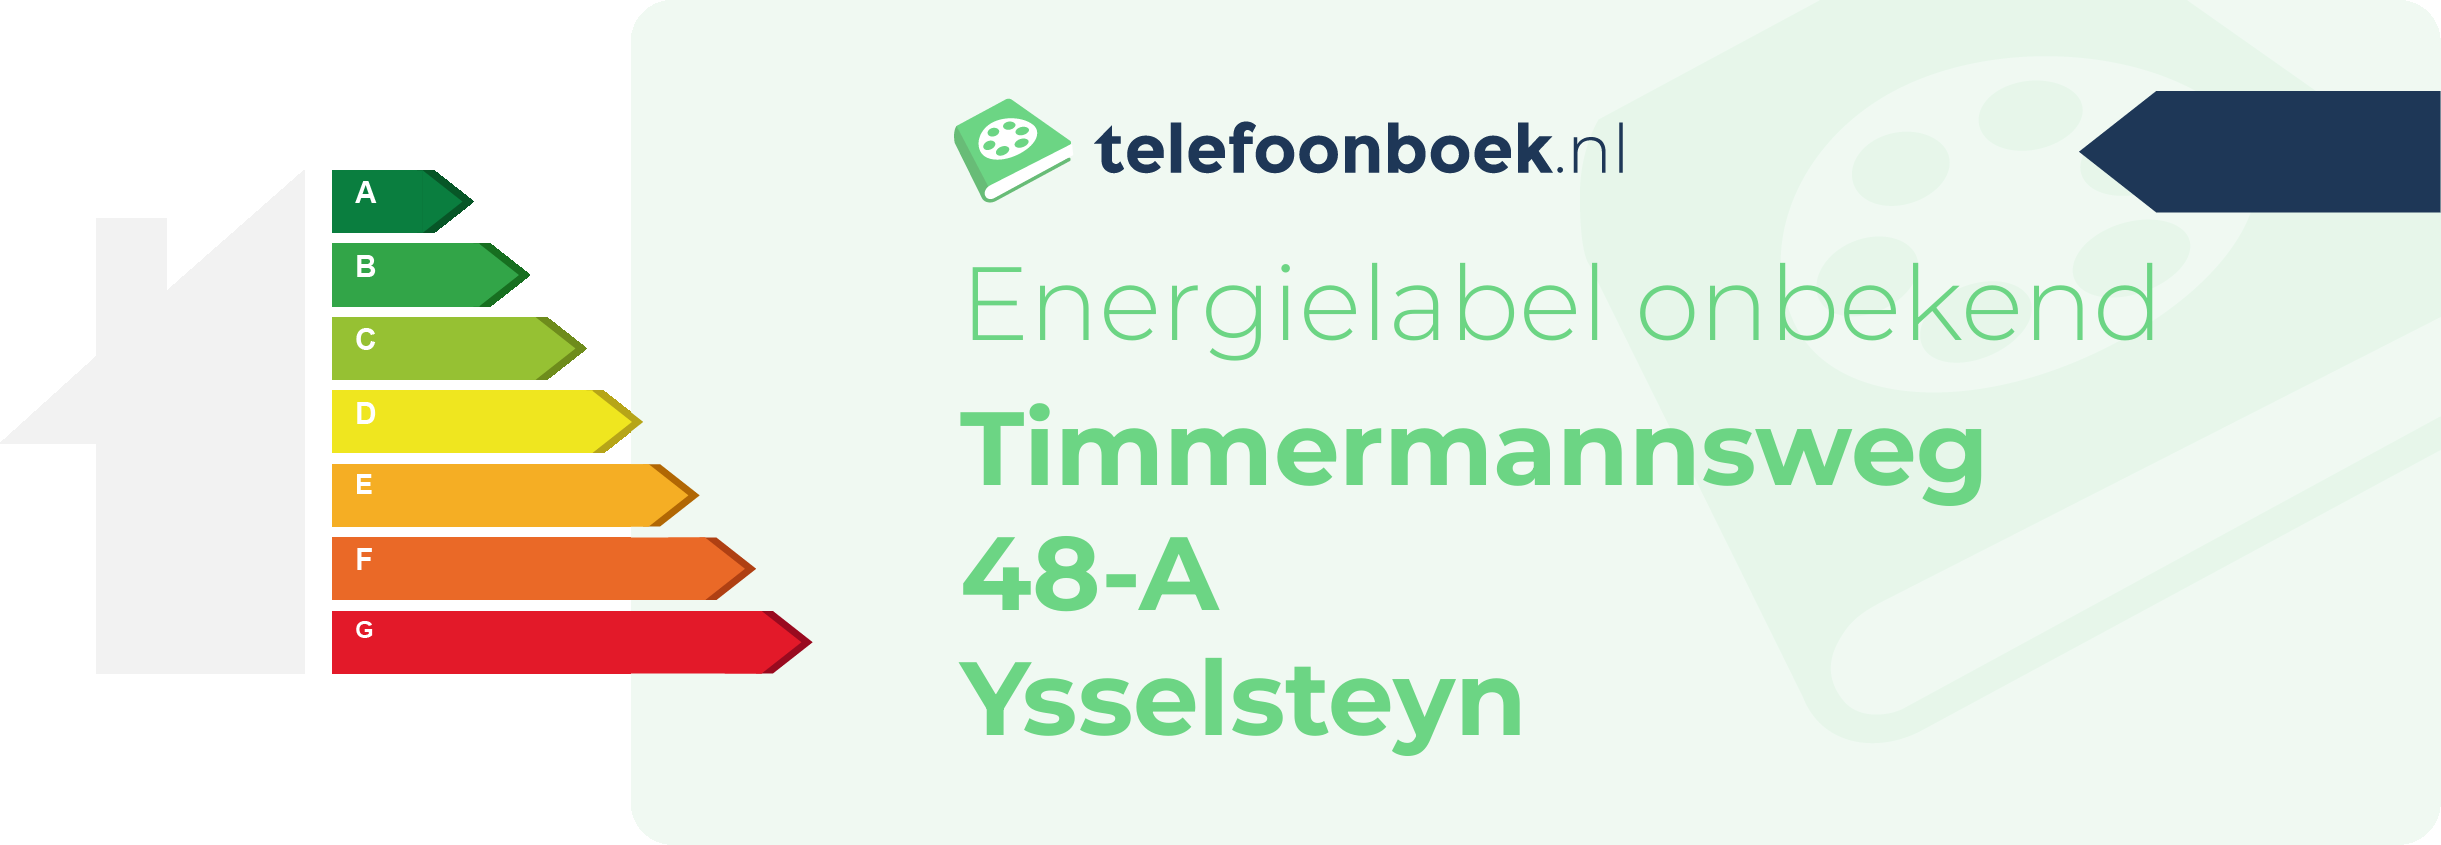 Energielabel Timmermannsweg 48-A Ysselsteyn